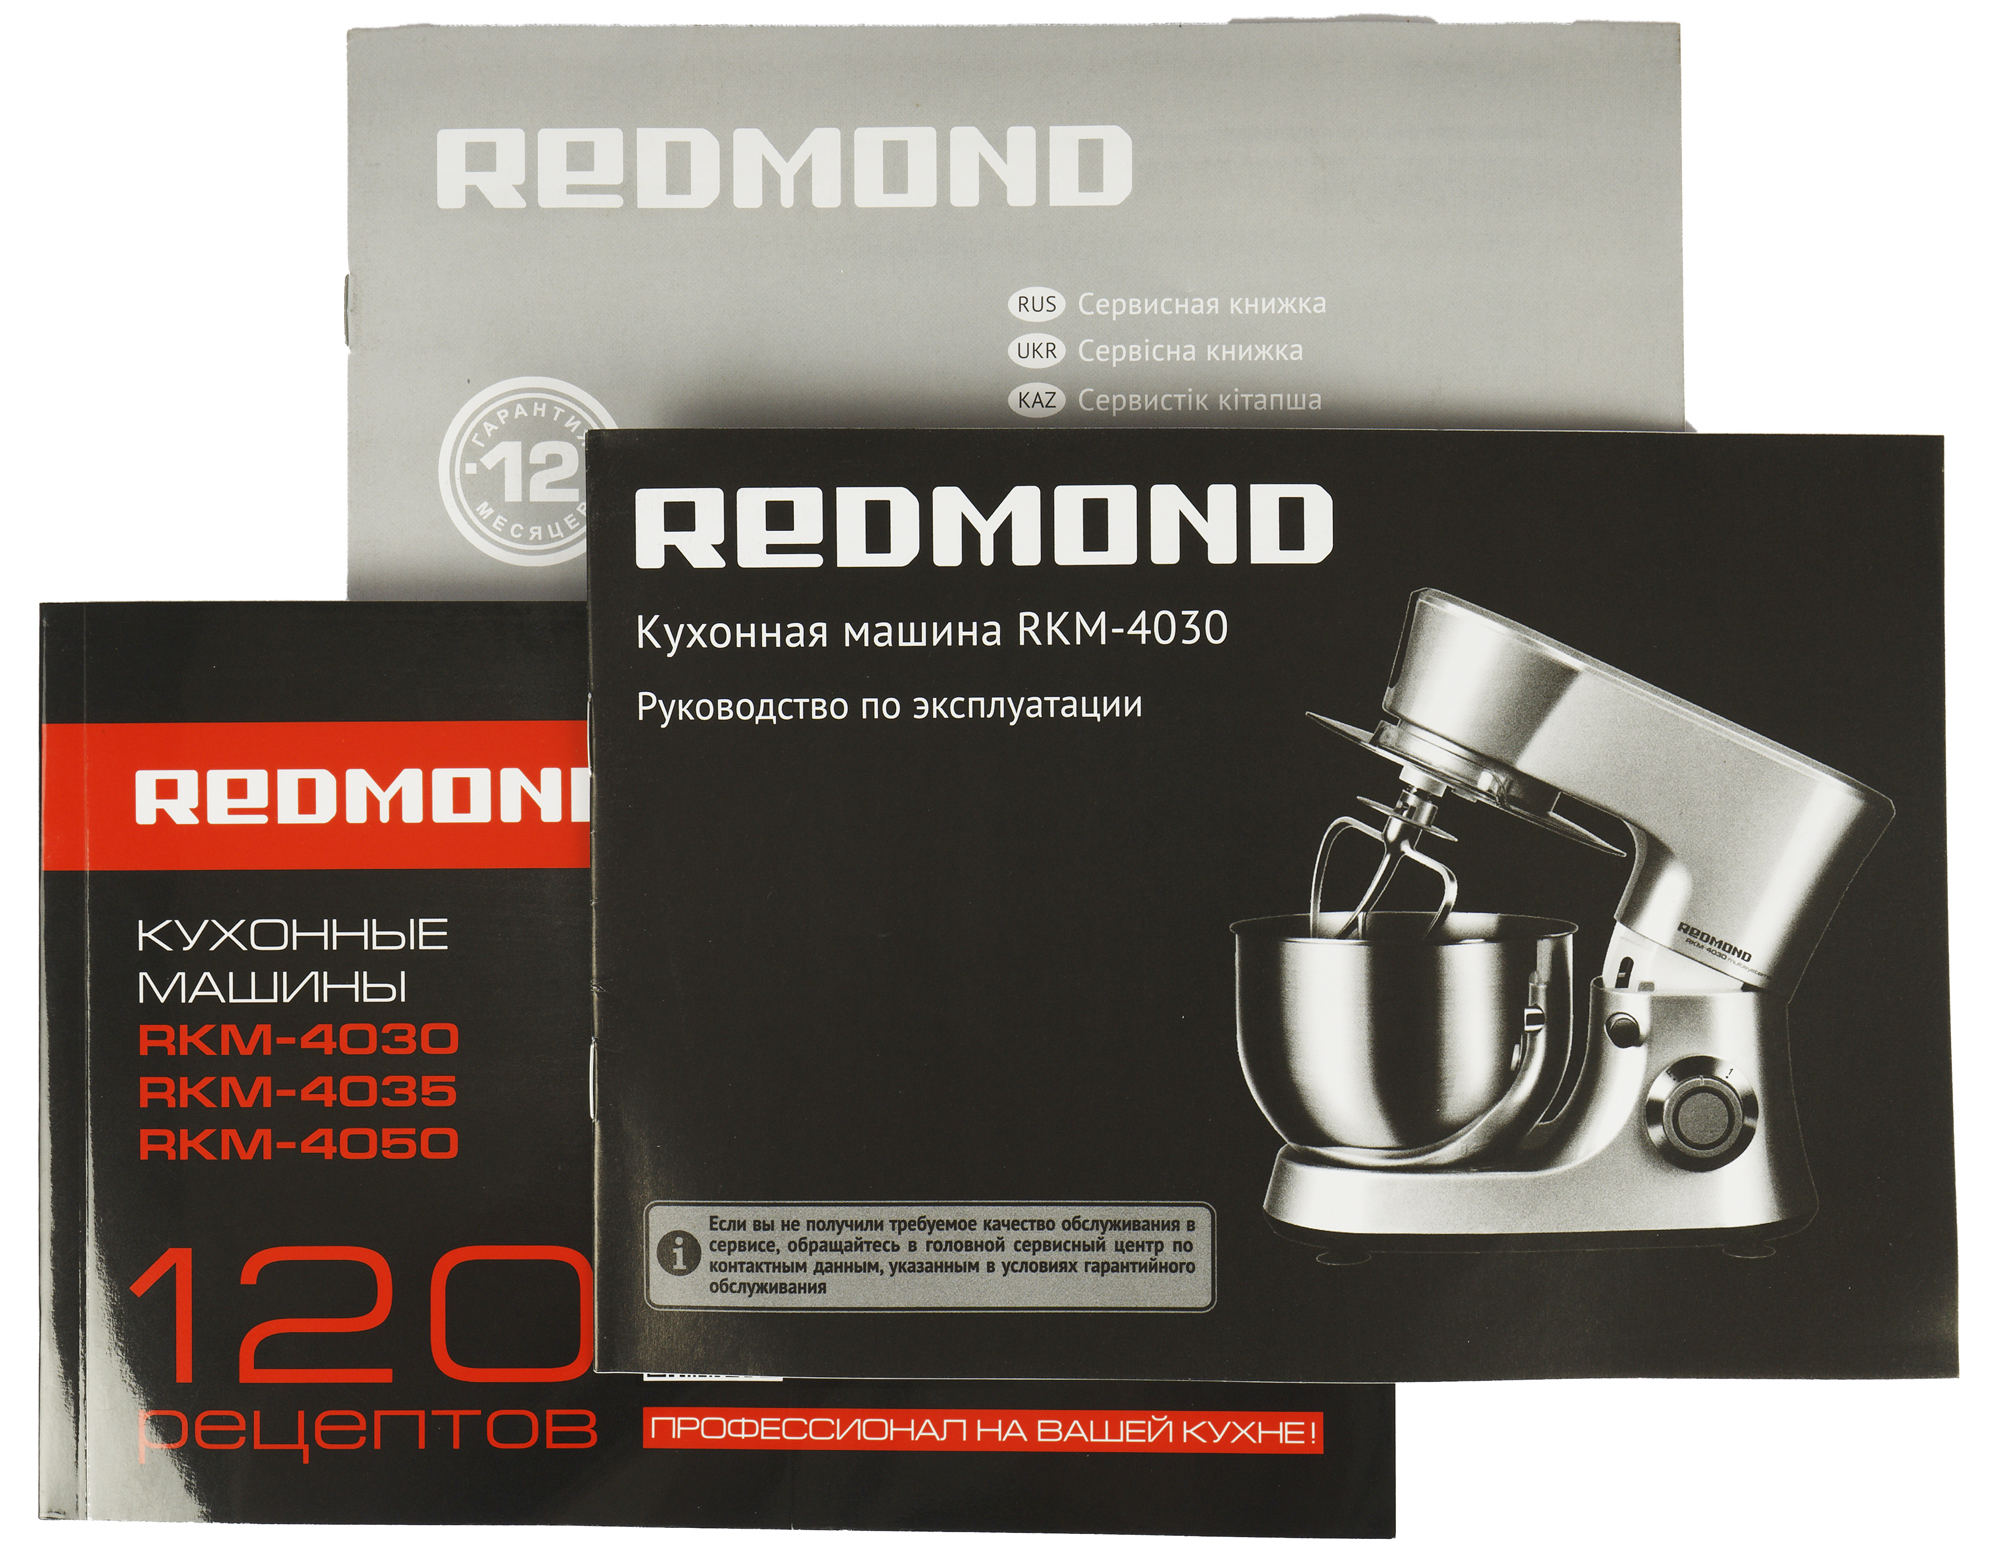 Запчасти на кухонную машину Redmond 4045. Кухонная машина состоит из. Устройство Поттера Redmond.